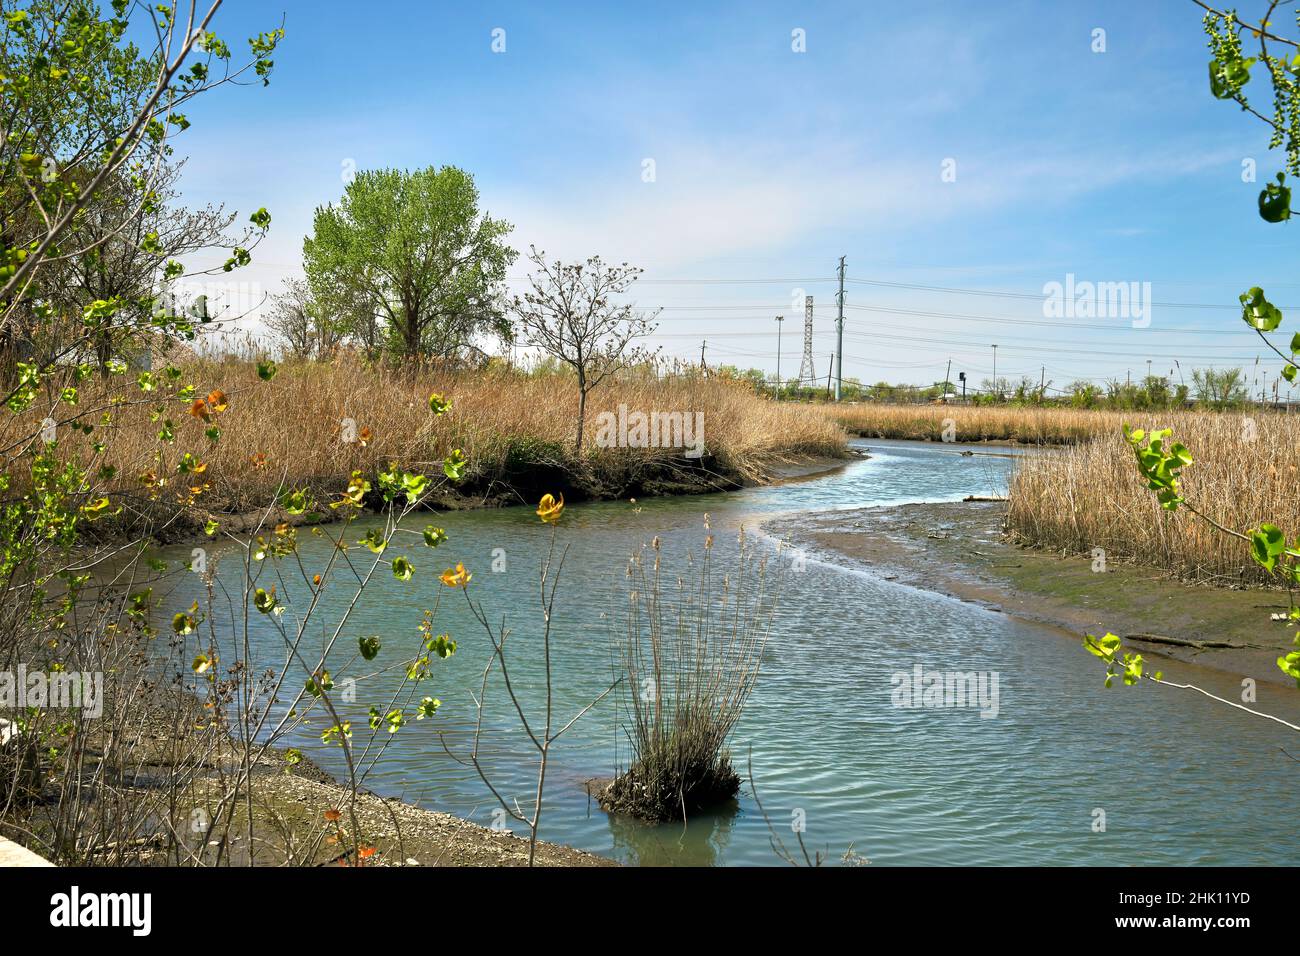 Bel torrente, piccolo fiume che scorre, con riflessi, canne, cielo blu e parte di uno spartiacque, estuario. Foto Stock